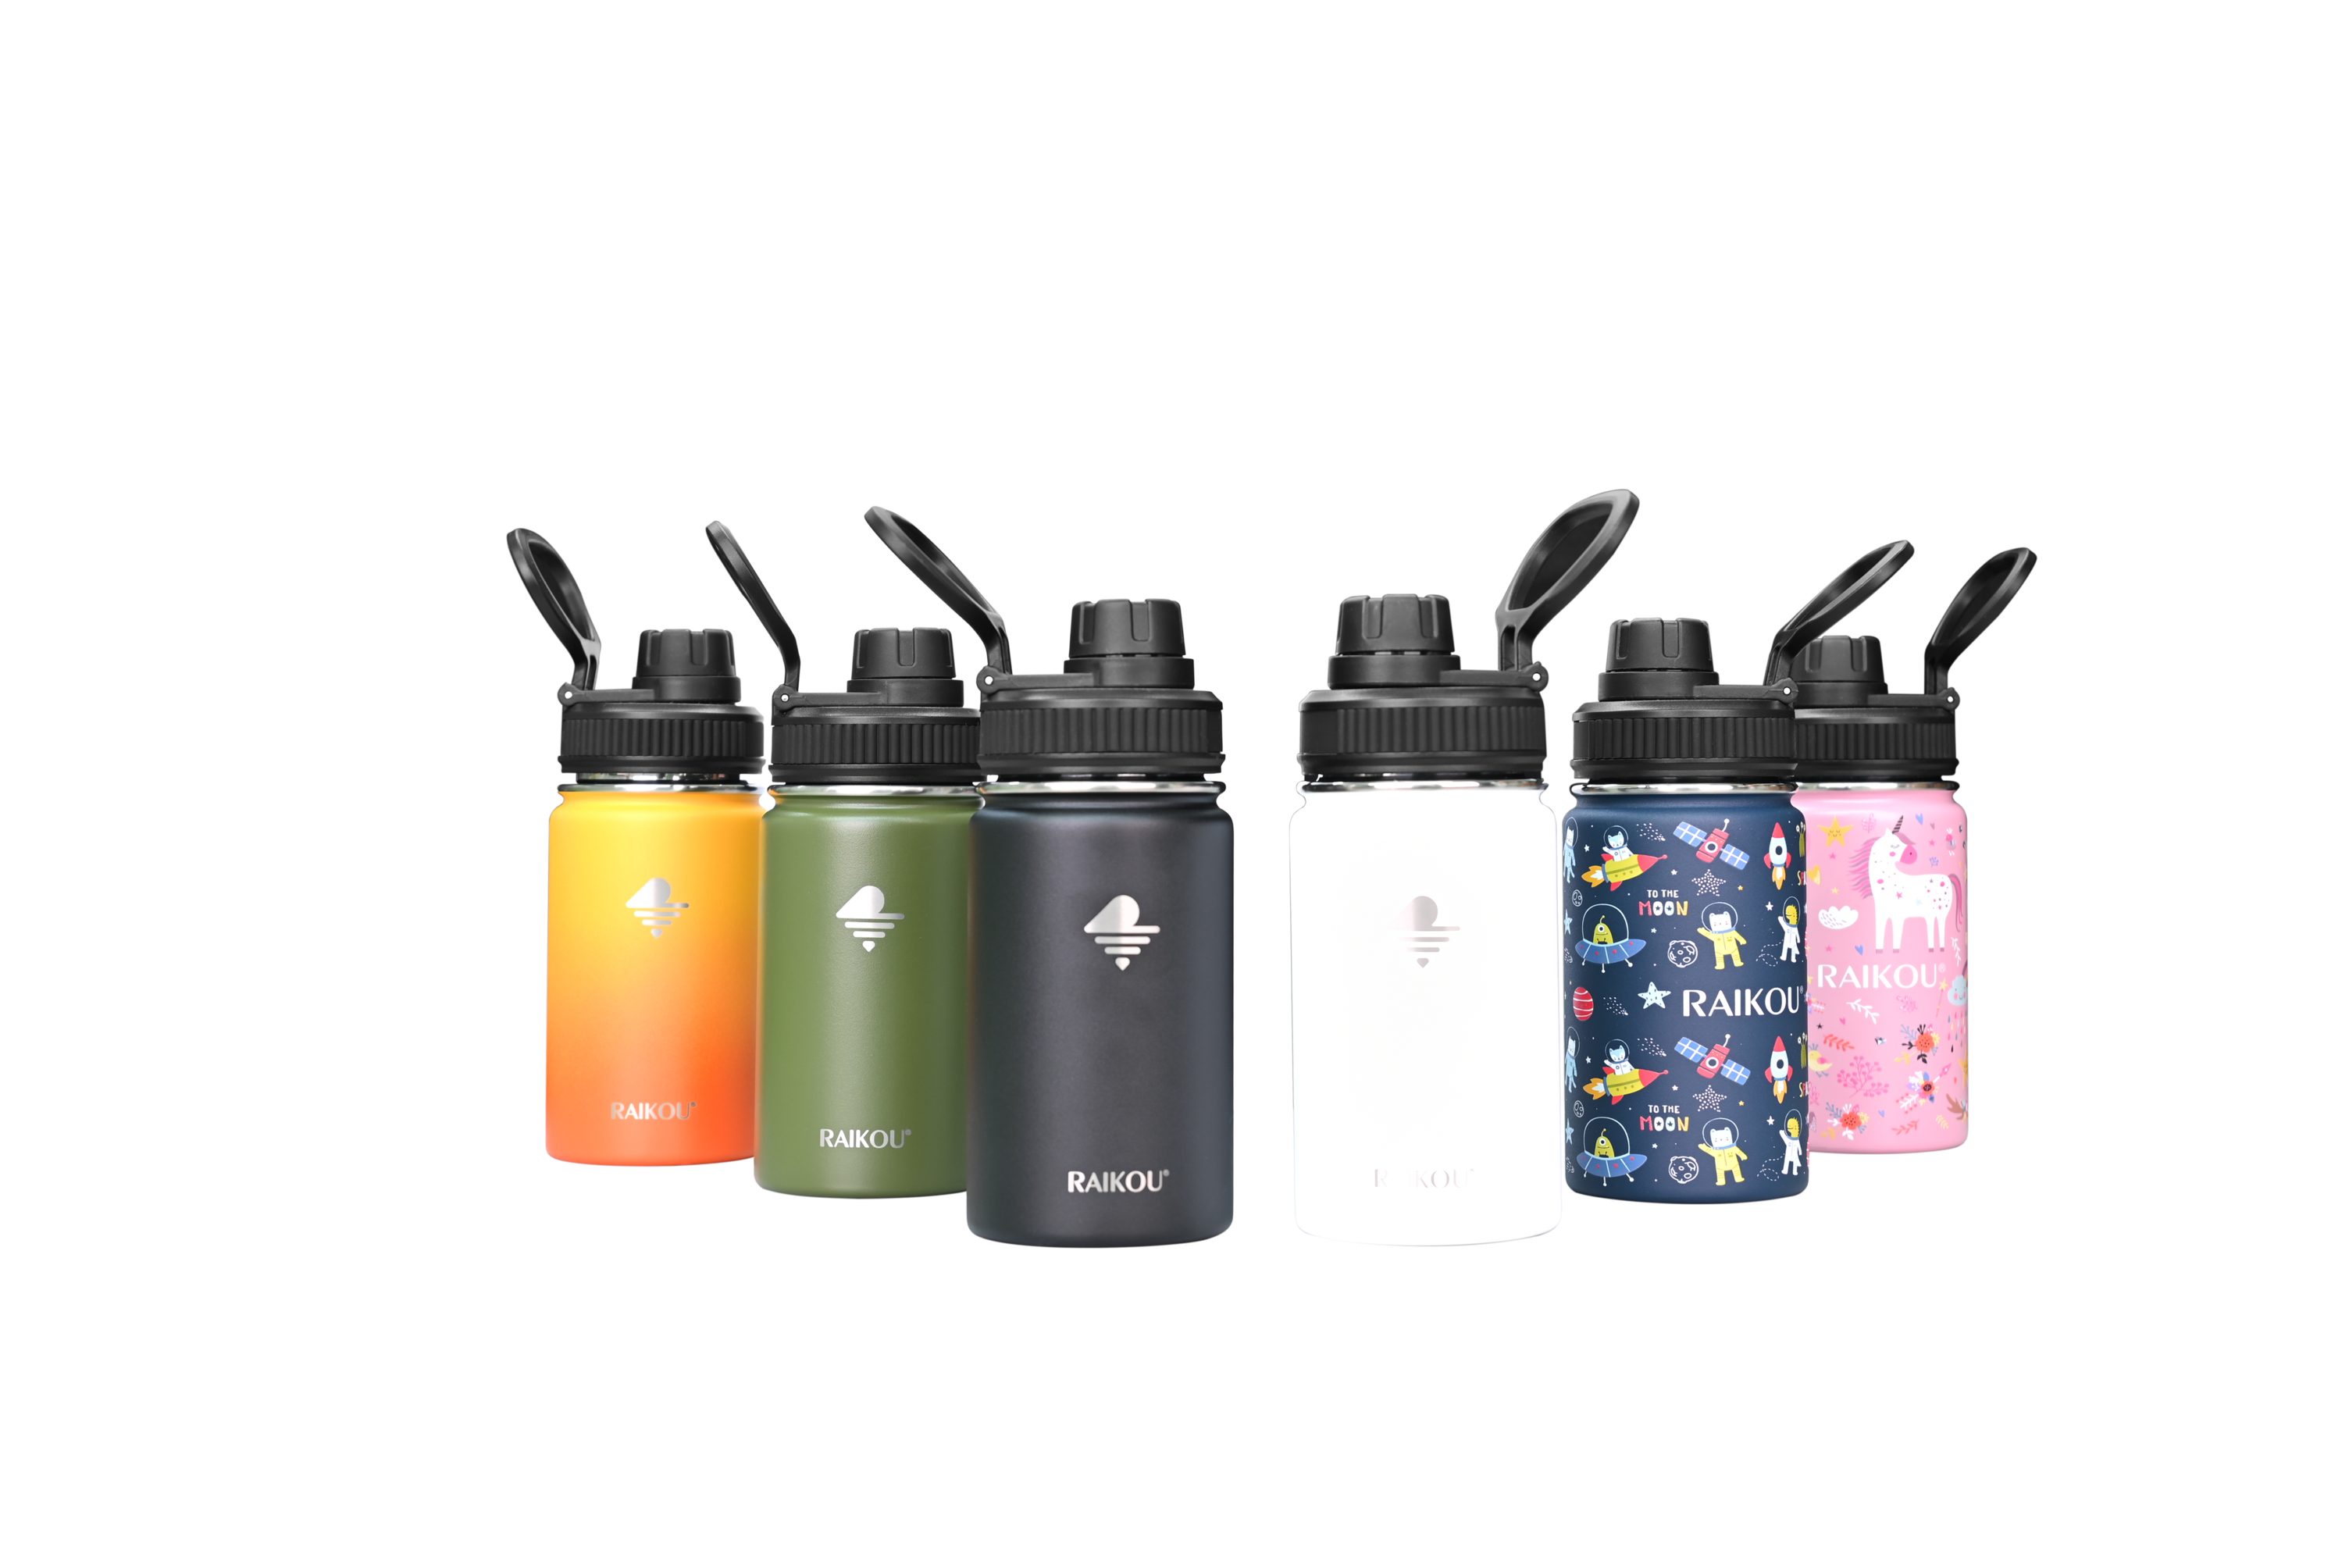 Sportflasche, Wasserflasche Auslaufsichere Trinkflasche Isolierflasche RAIKOU 2 mit Schwarz Deckel Vakuumisolierte